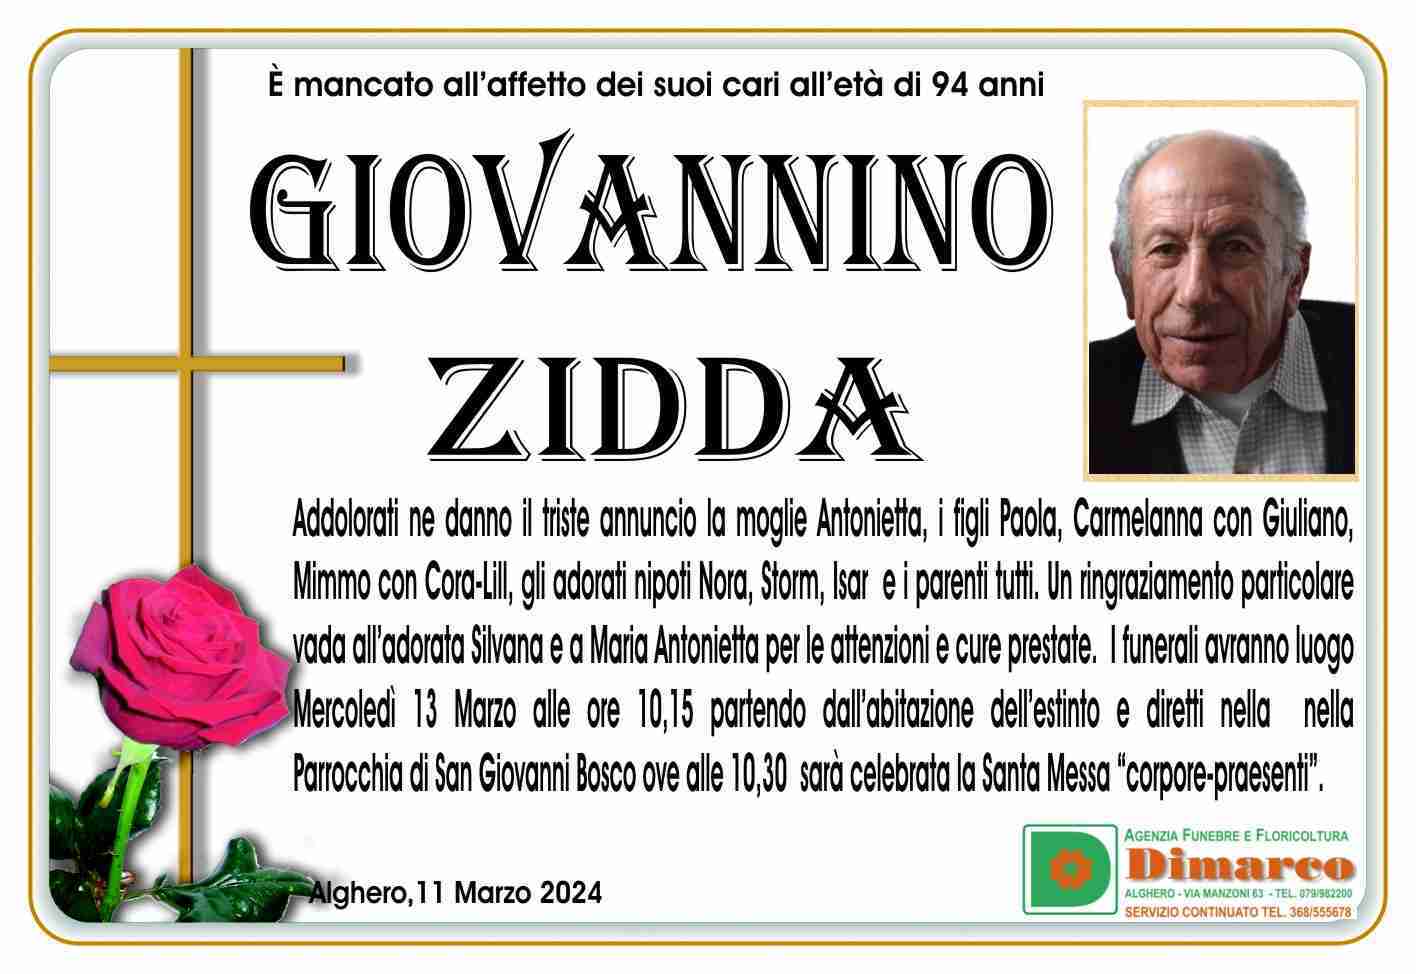 Giovannino Zidda